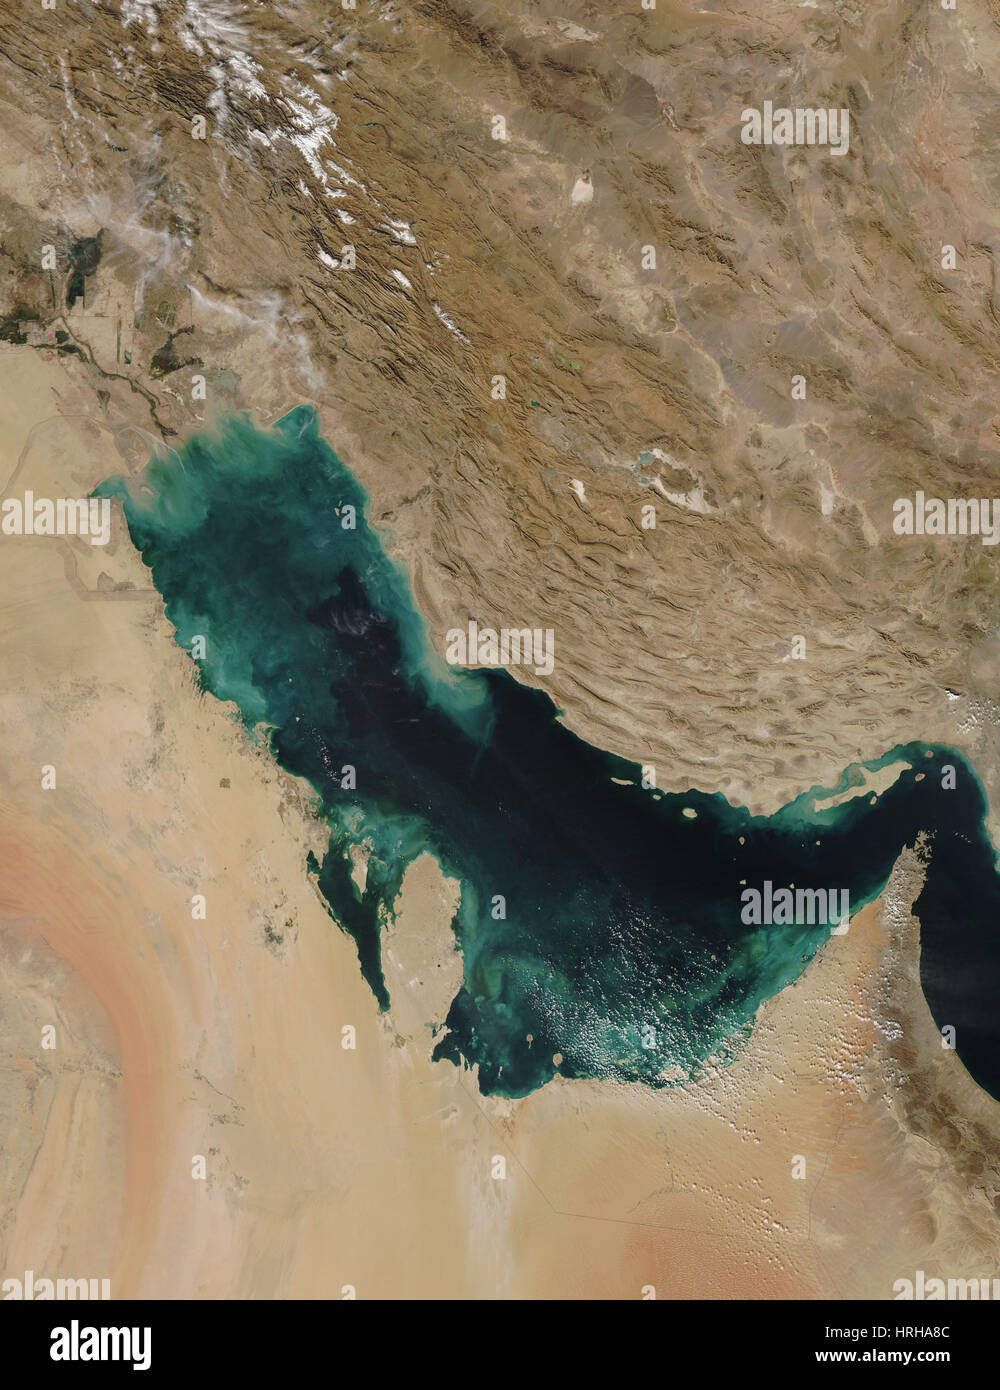 Persian Gulf, MODIS Image Stock Photo